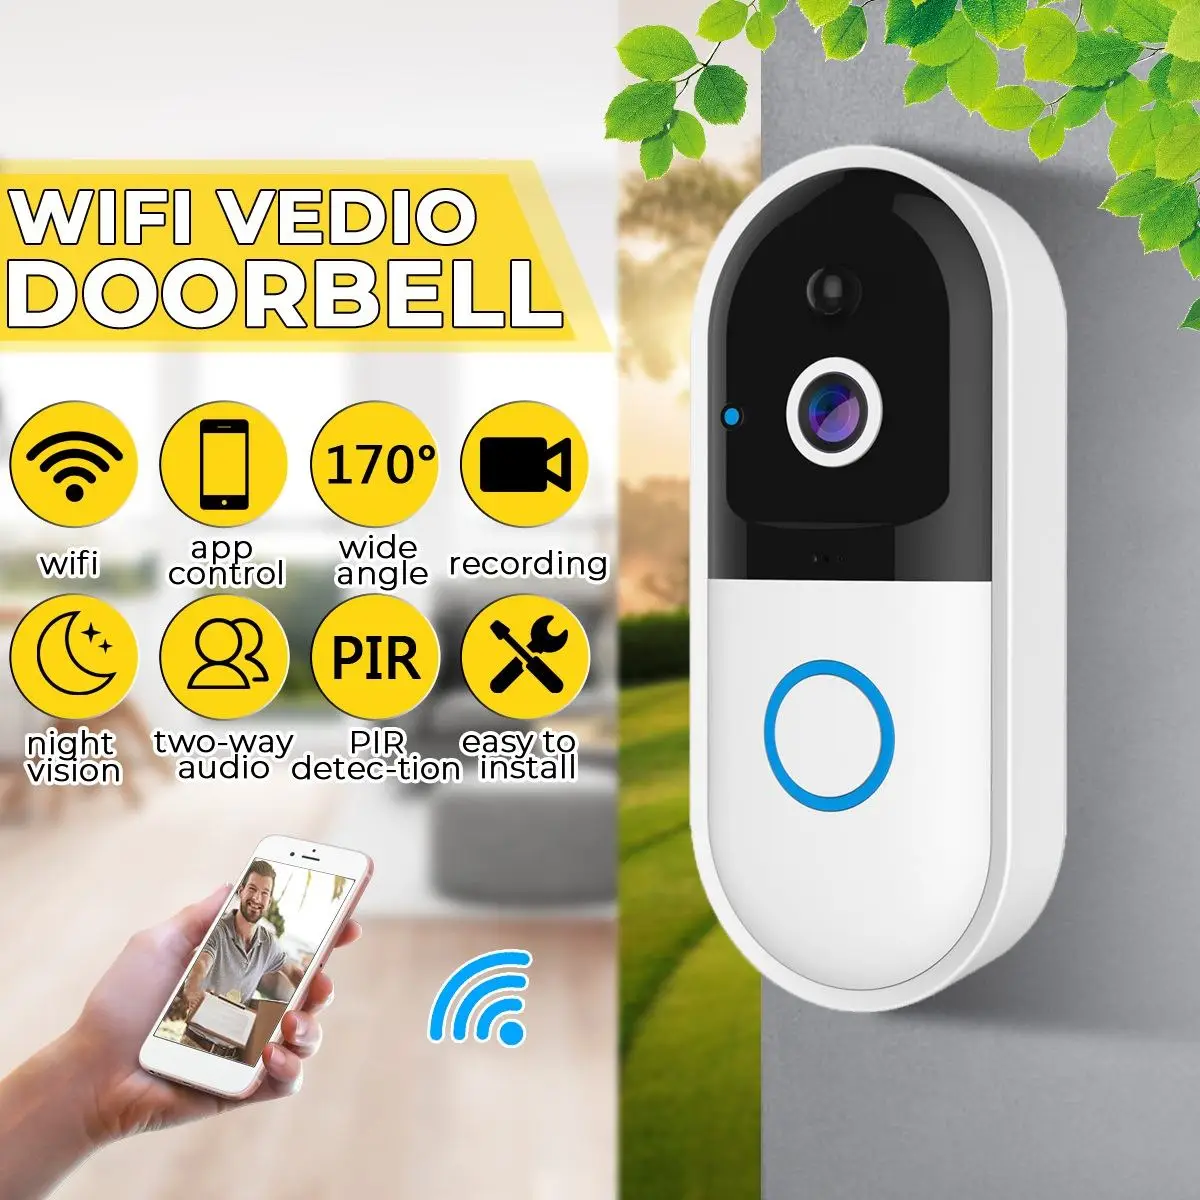 Беспроводная камера Wi-Fi для дверного звонка Smart Video домофонный дверной звонок Видеозвонок для квартиры ИК-сигнализация Беспроводная цветная камера безопасности объектива